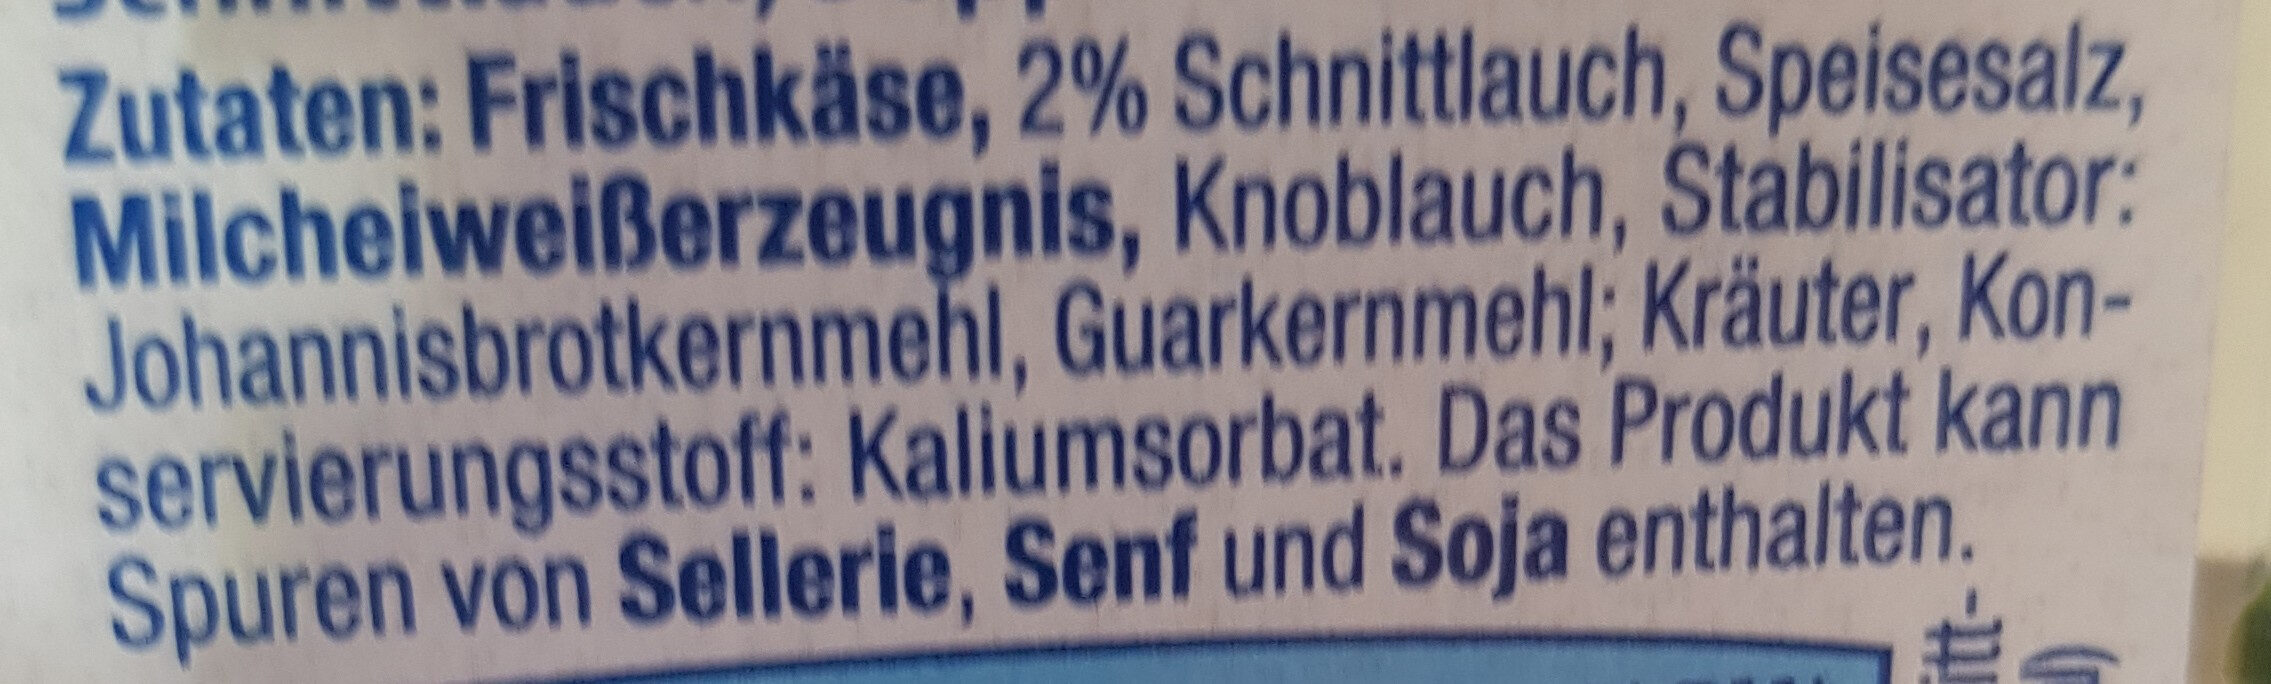 Frischkäse Rolle Kräuter - Ingredienser - de